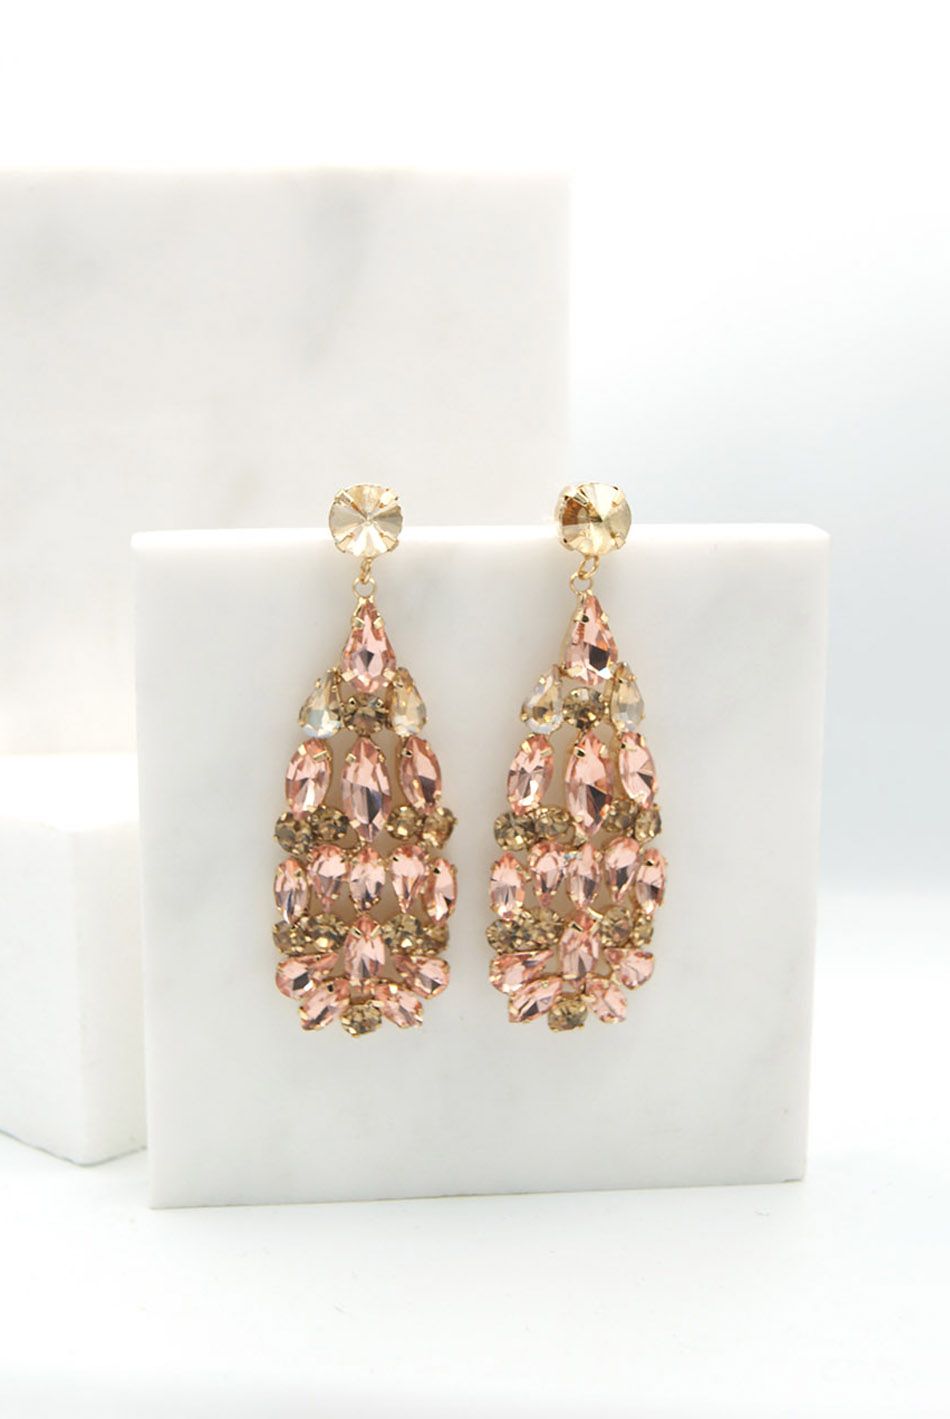 Κρεμαστά σκουλαρίκια σε χρυσή βάση με στρας και κρυστάλλους Ροζ / 126023-pink ΑΞΕΣΟΥΑΡ joya.gr